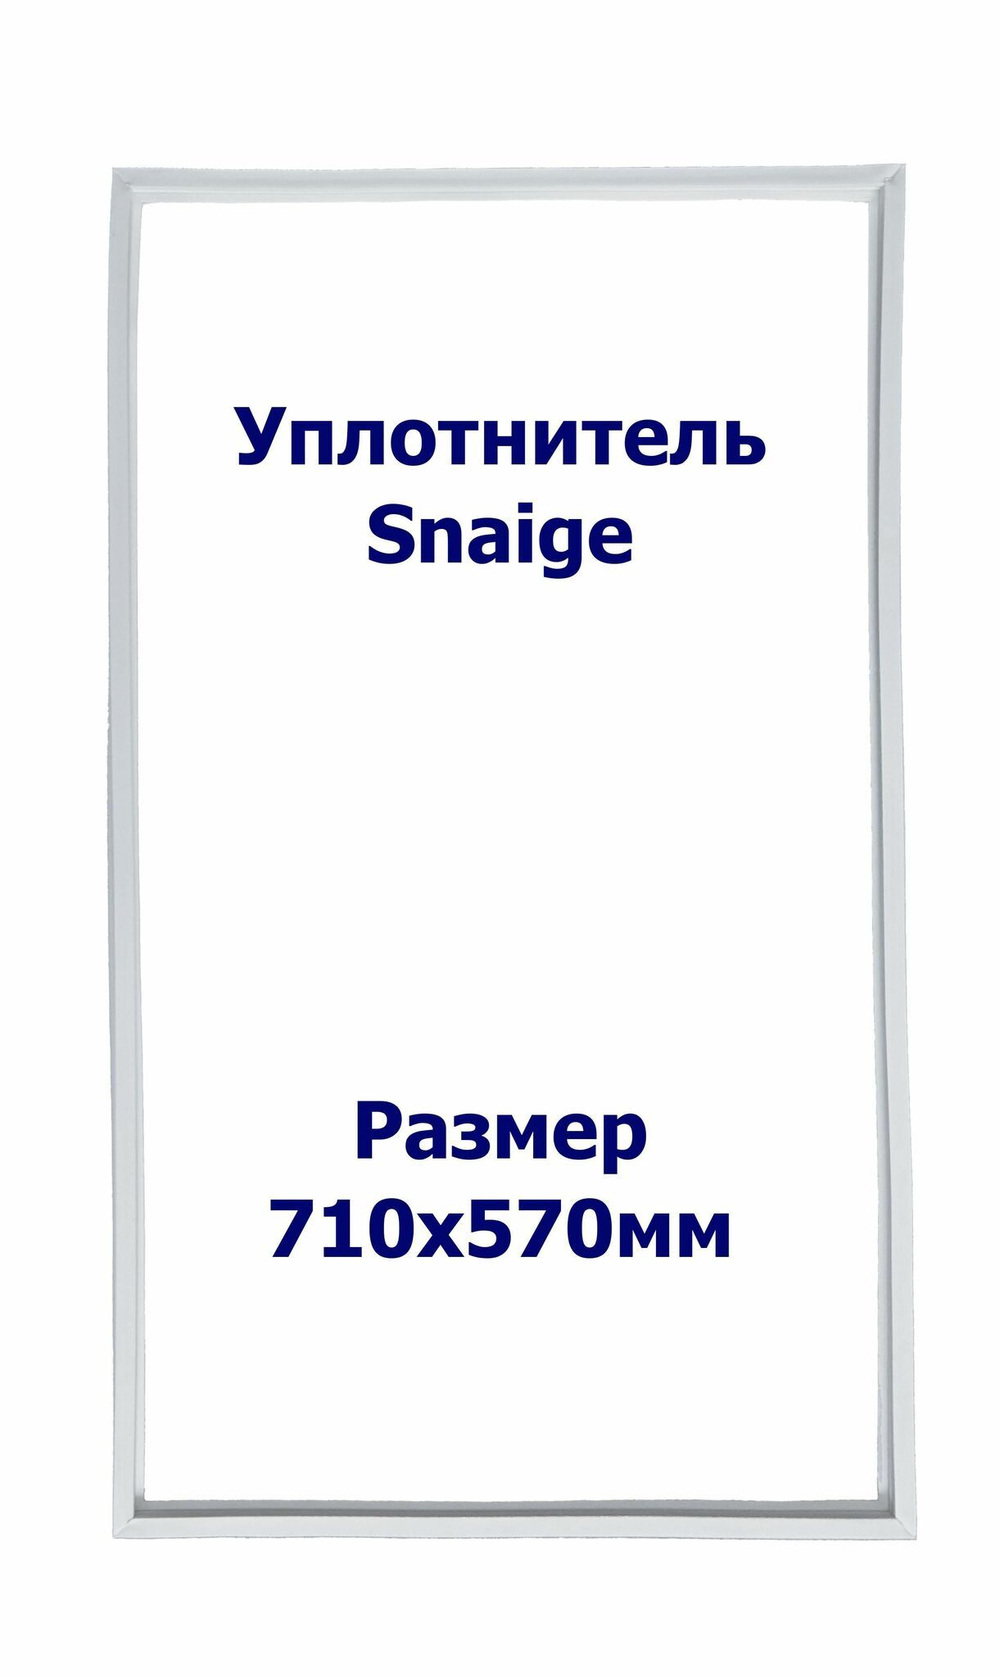 Уплотнитель Snaige RF 36. м.к., Размер - 710x570 мм. SK